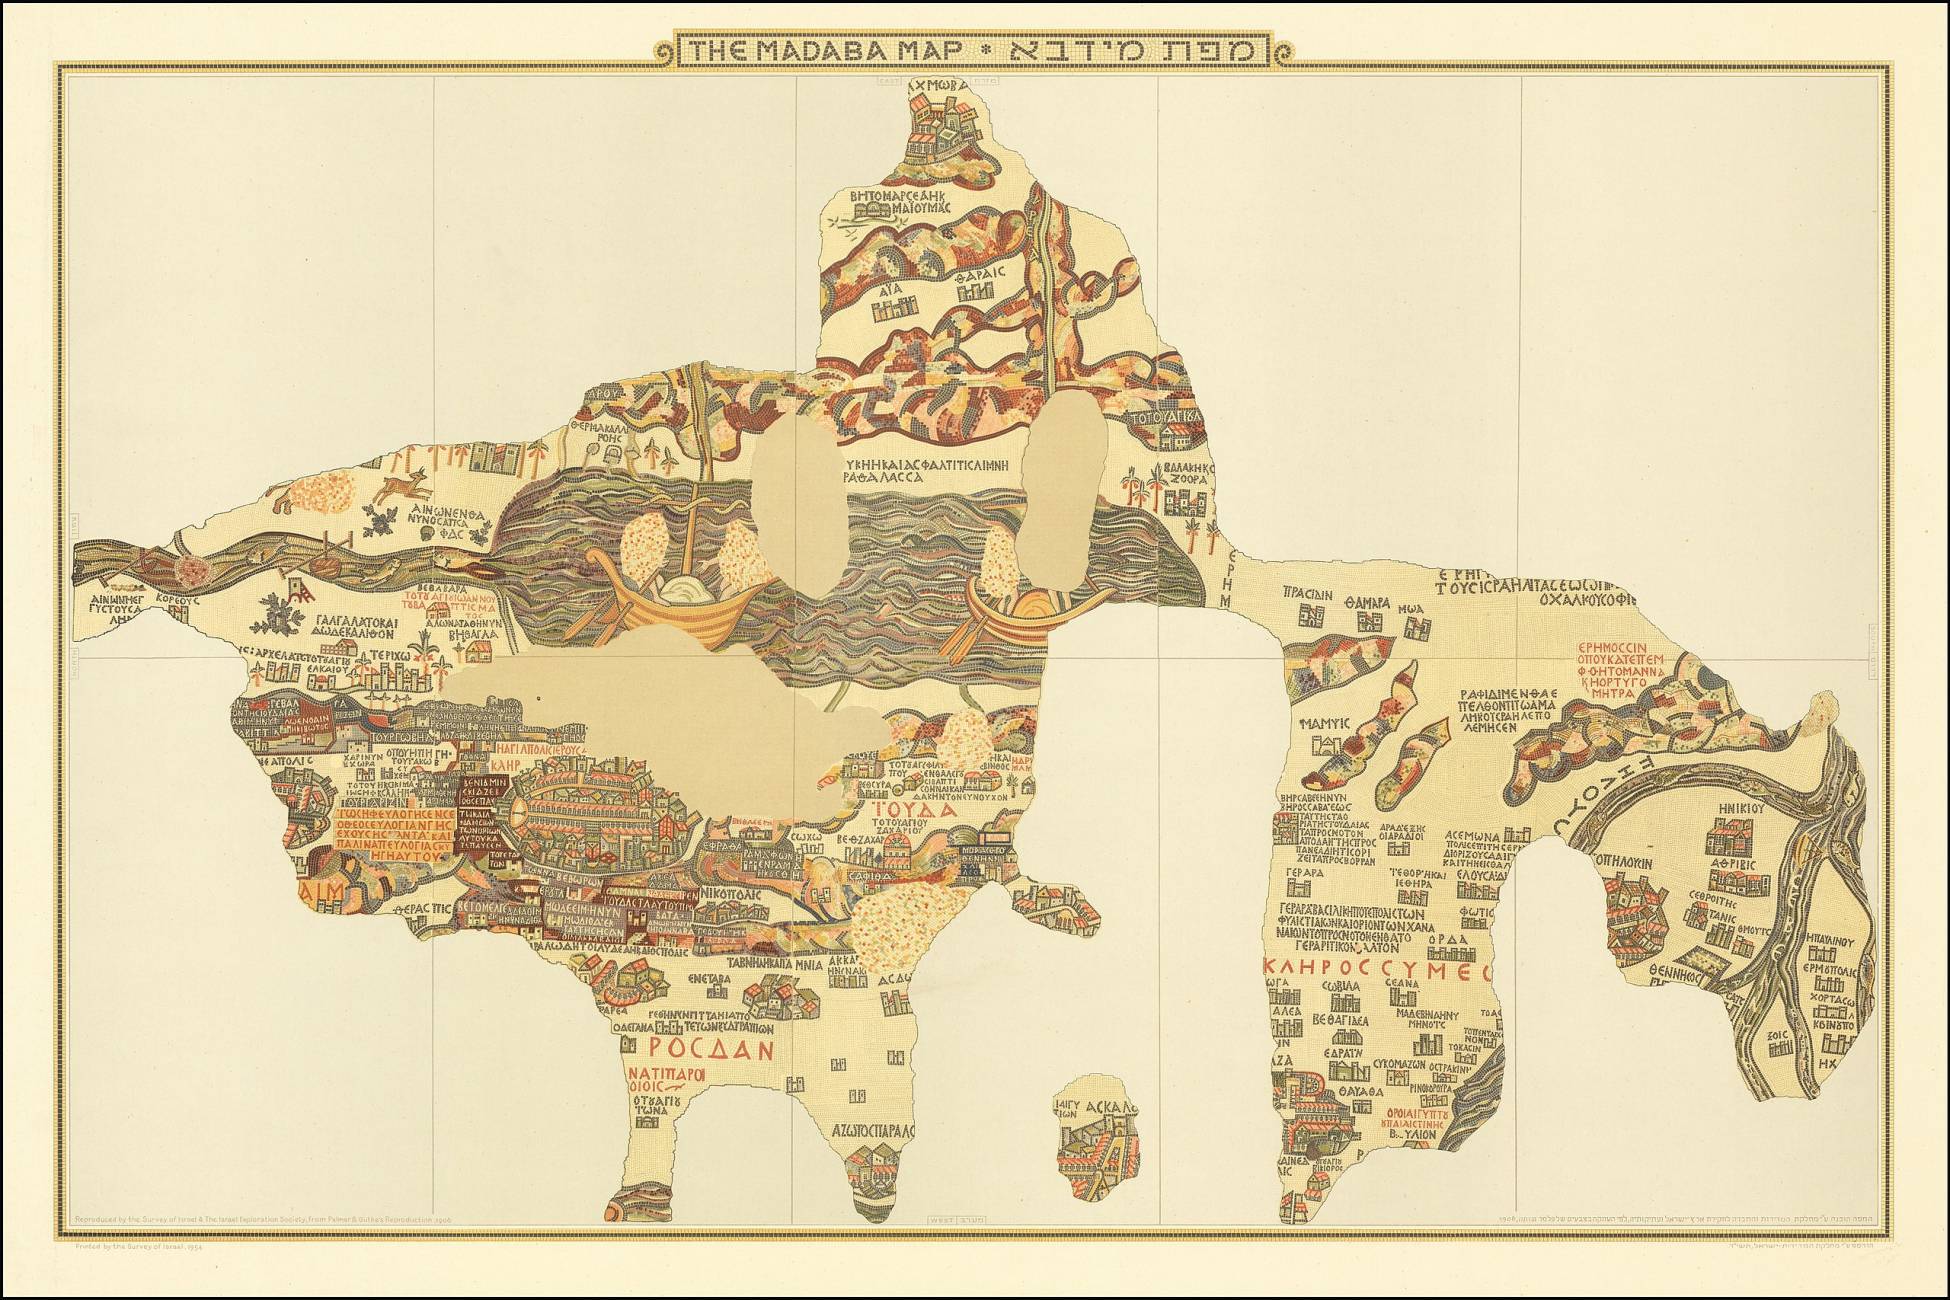 De "Madaba-mozaïekkaart": de oudste geografische weergave van vloermozaïek uit de geschiedenis 2